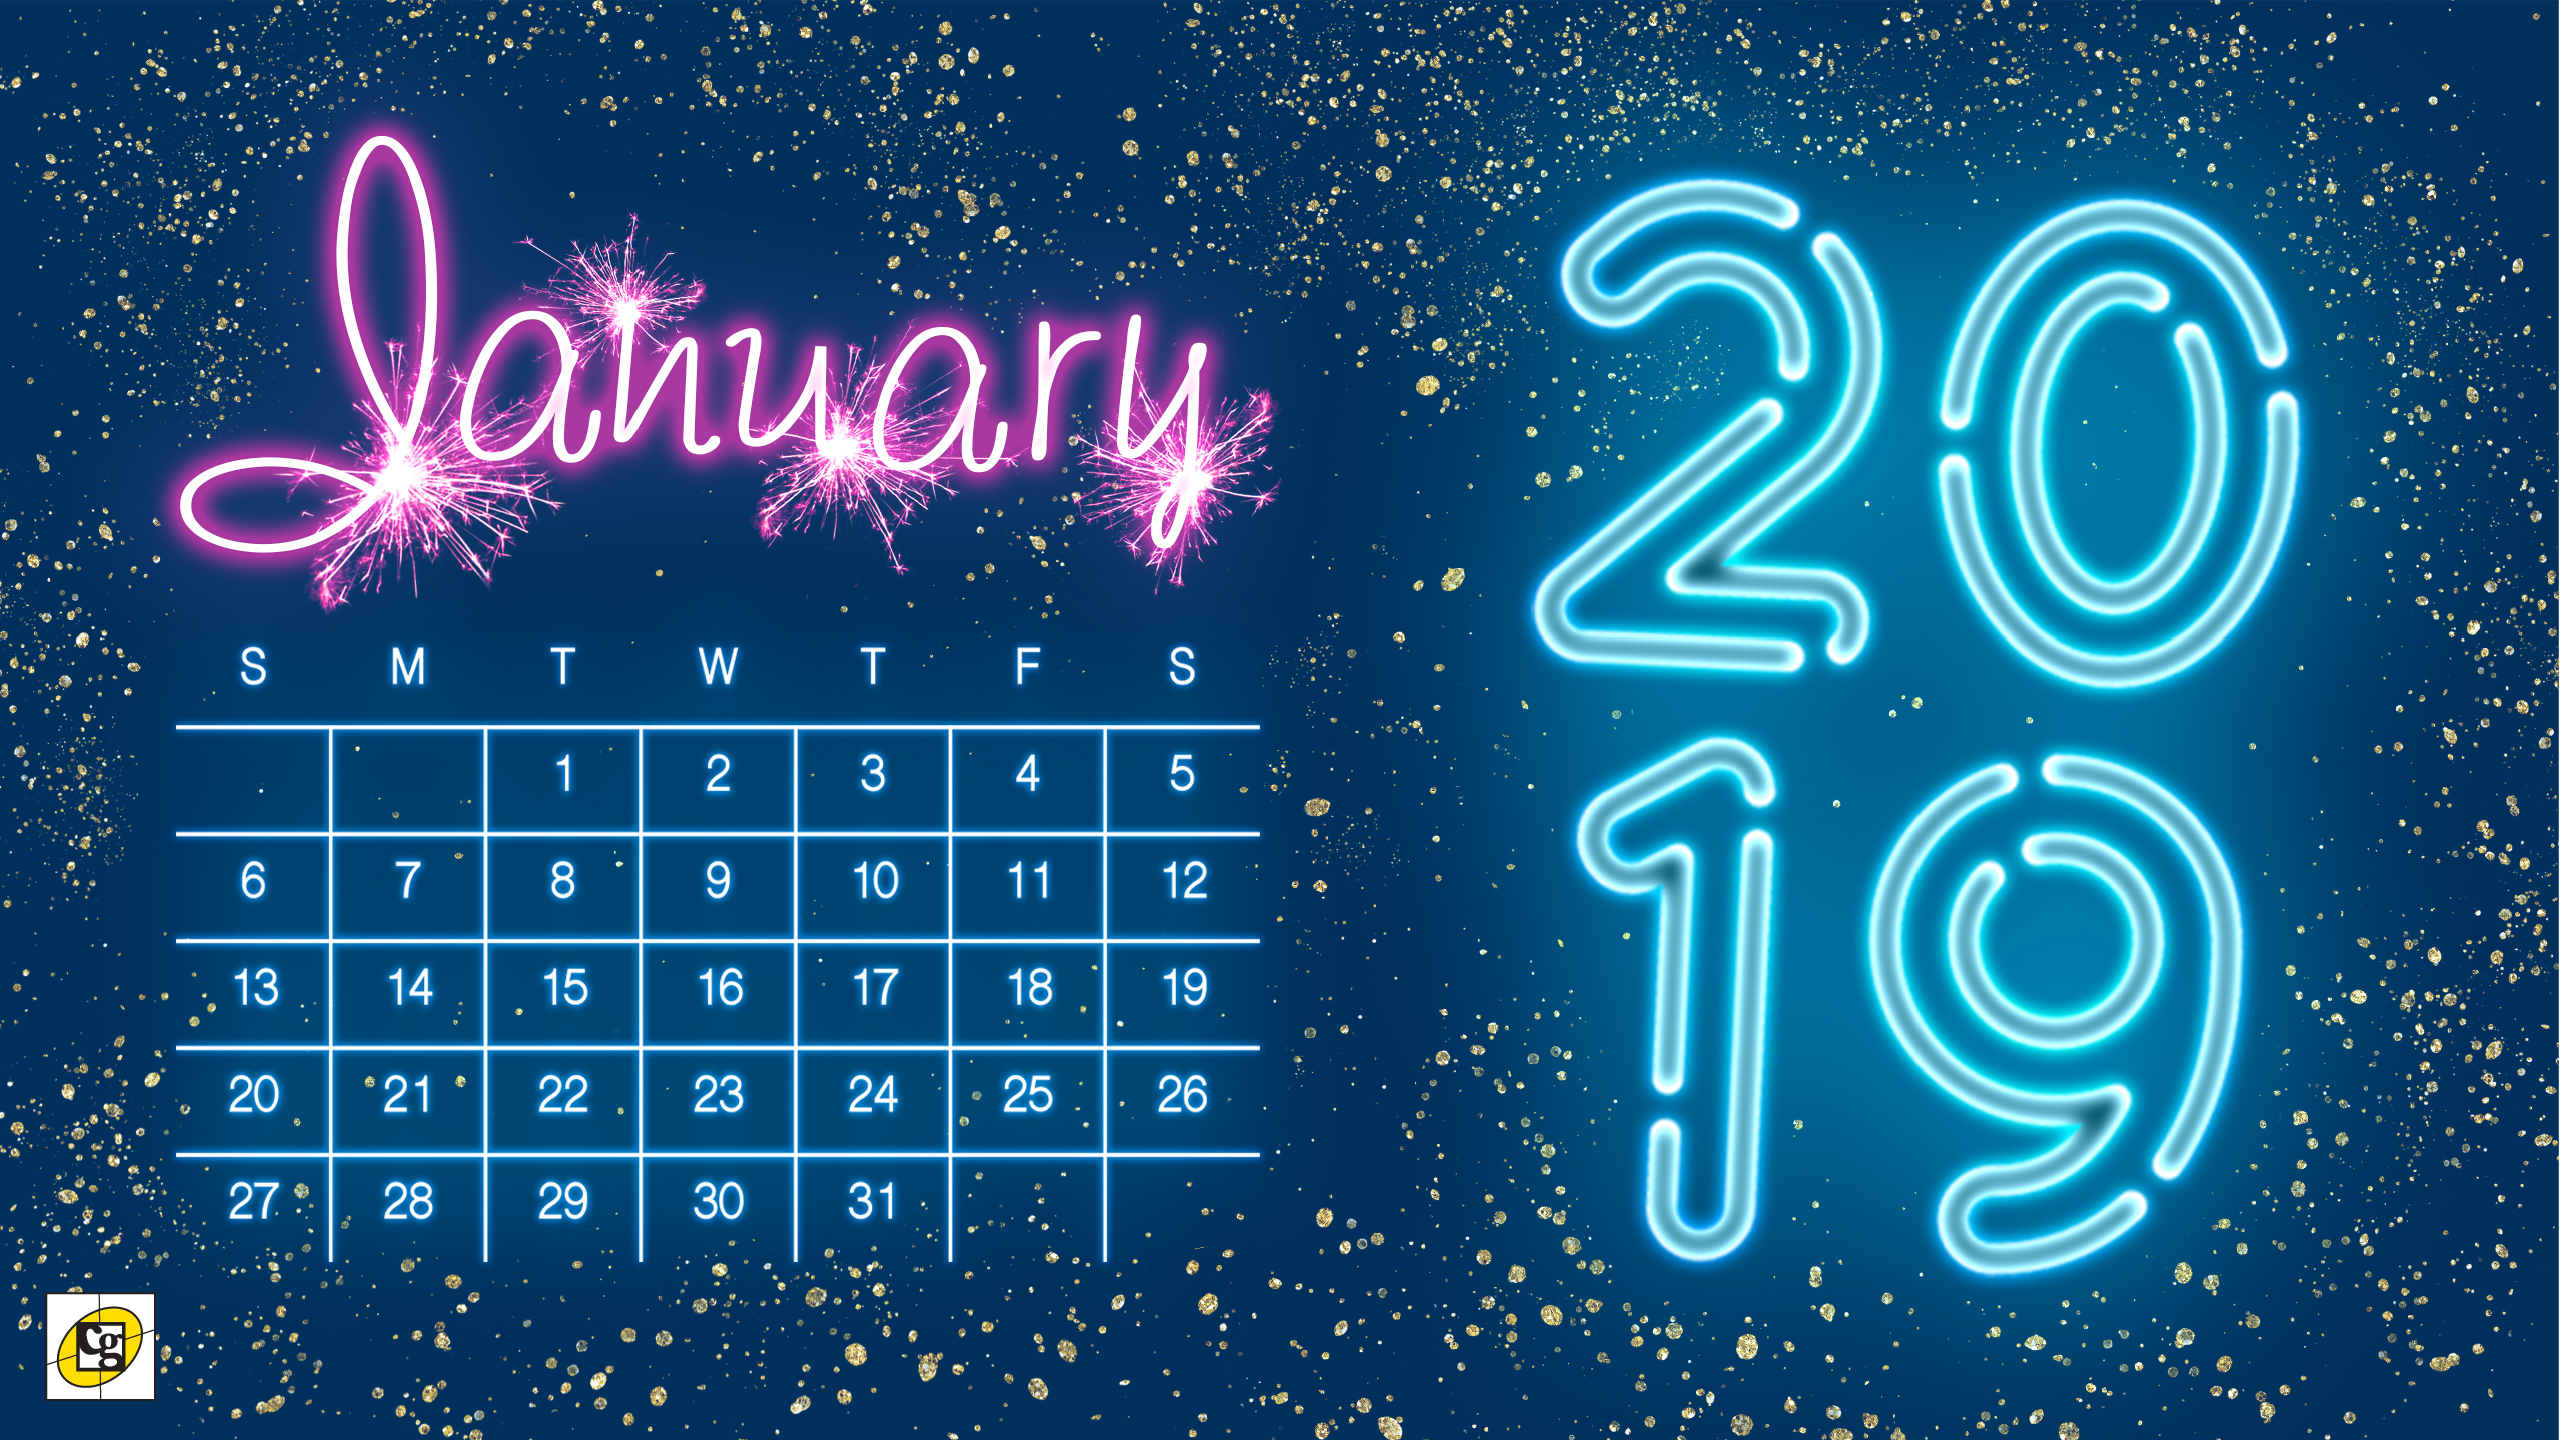 Cute January 2019 Calendars